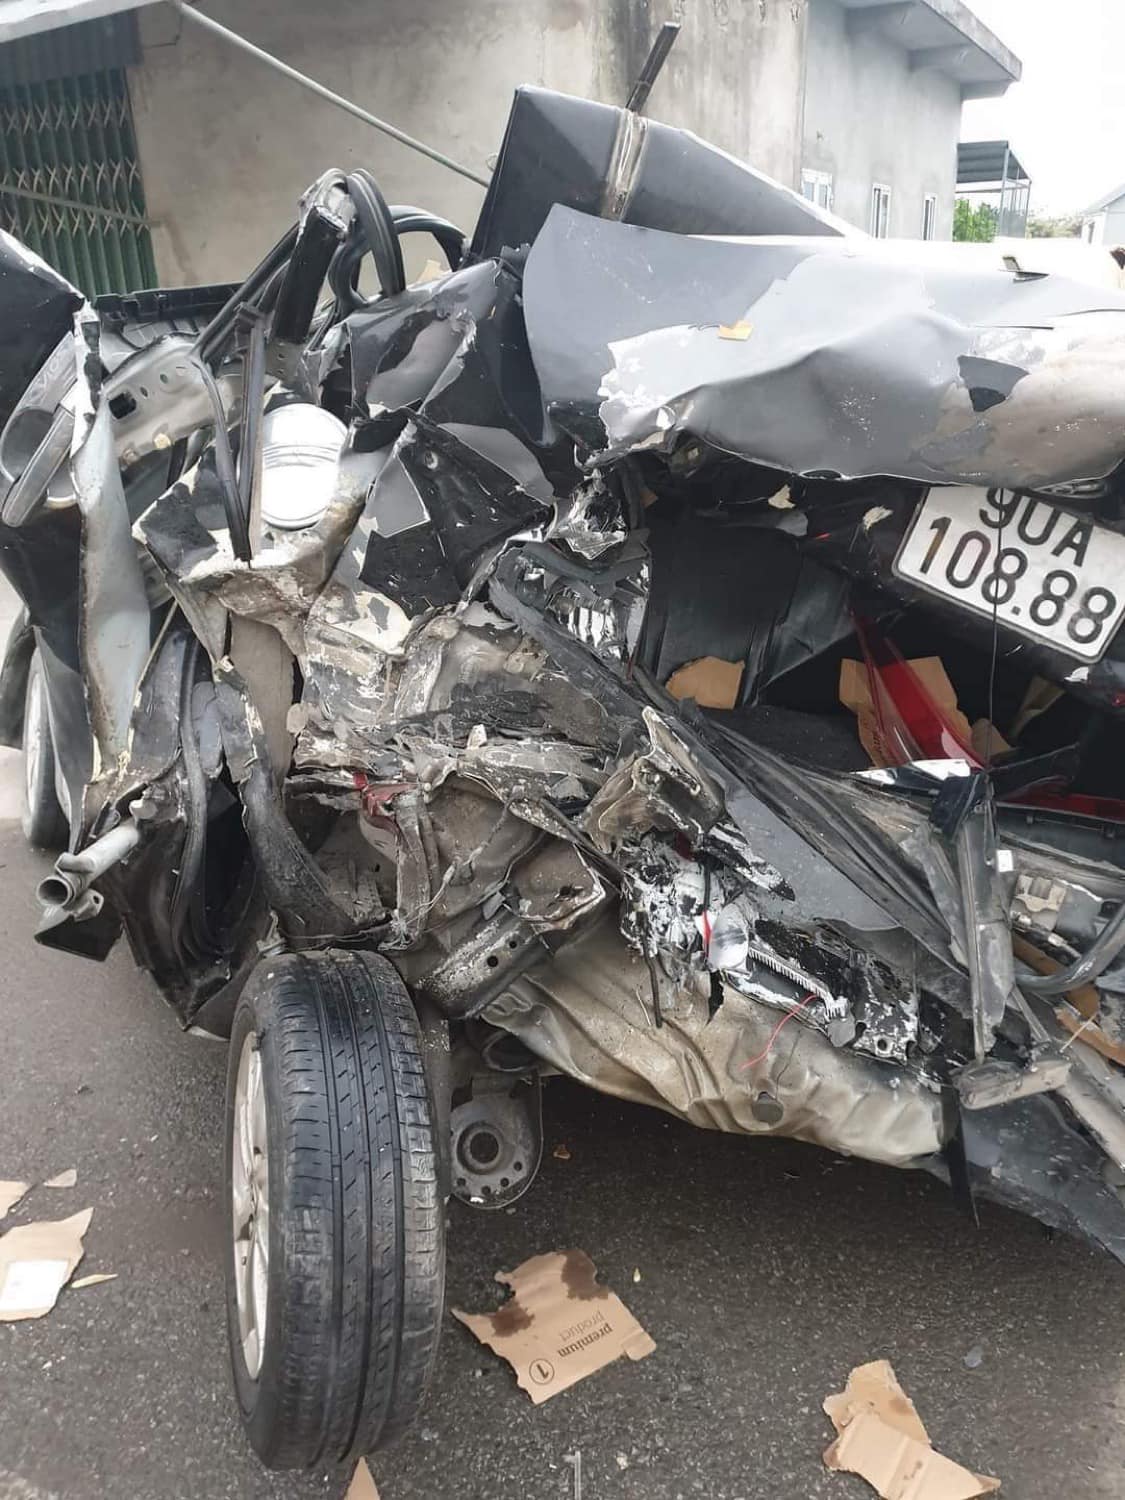 Rao Toyota Vios 2014 zin cả xe giá 230 triệu, người bán bị nghi ngờ lừa dối sau loạt ảnh xe tai nạn nát bét với biển số giống hệt - Ảnh 2.